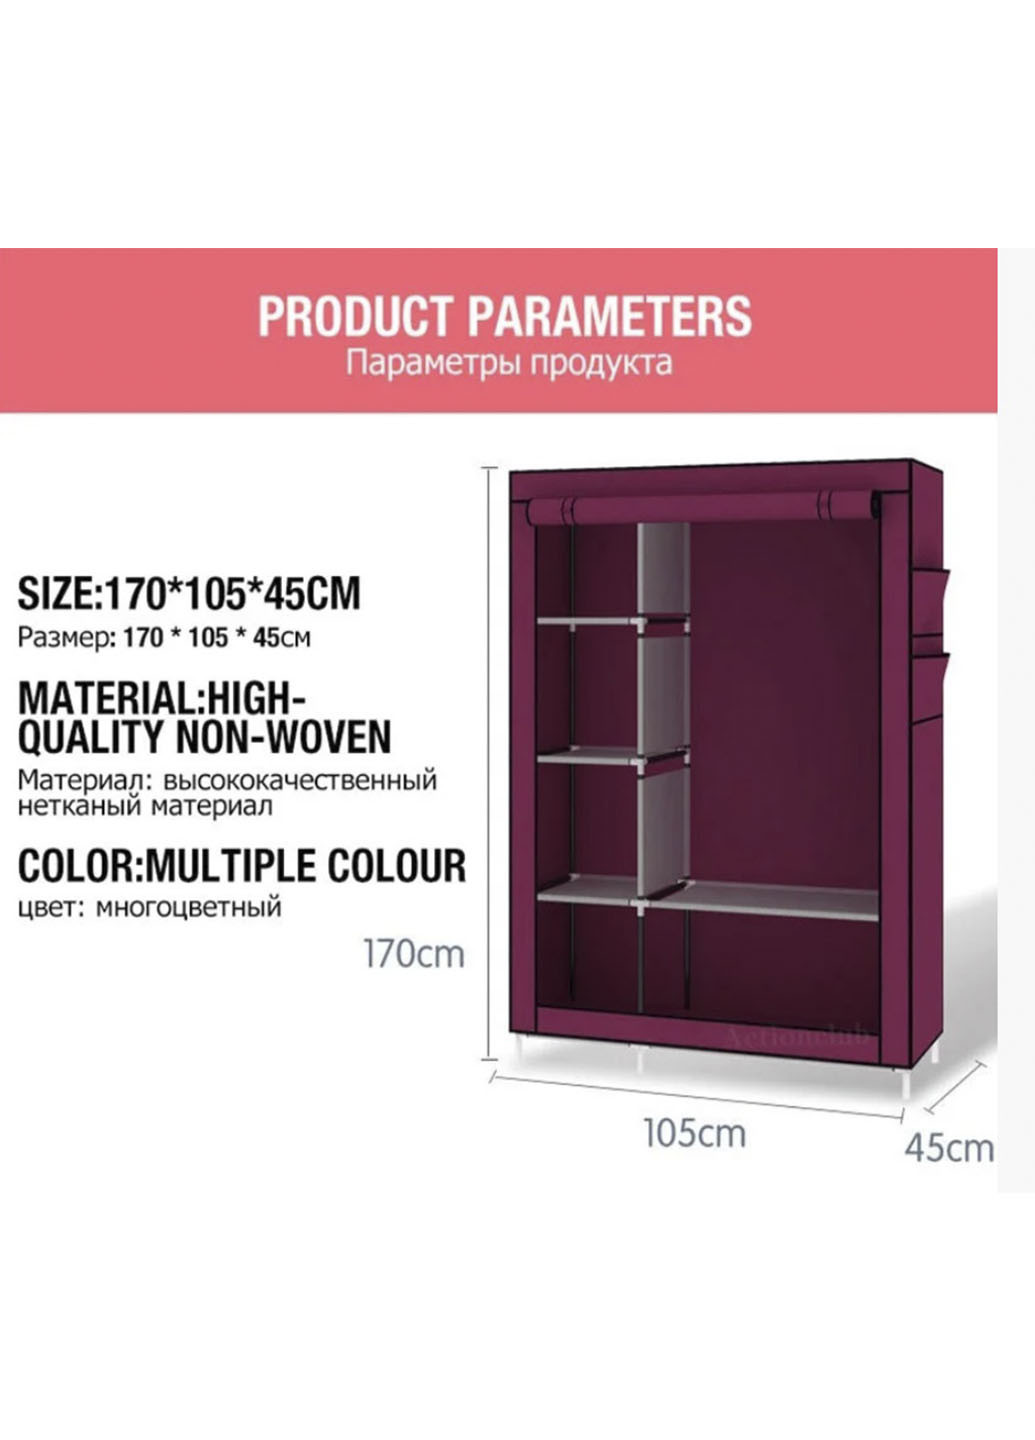 Тканевый шкаф складной STORAGE WARDROBE KM-105 на 2 секции (106х45х170 см), органайзер для одежды Rozia красный